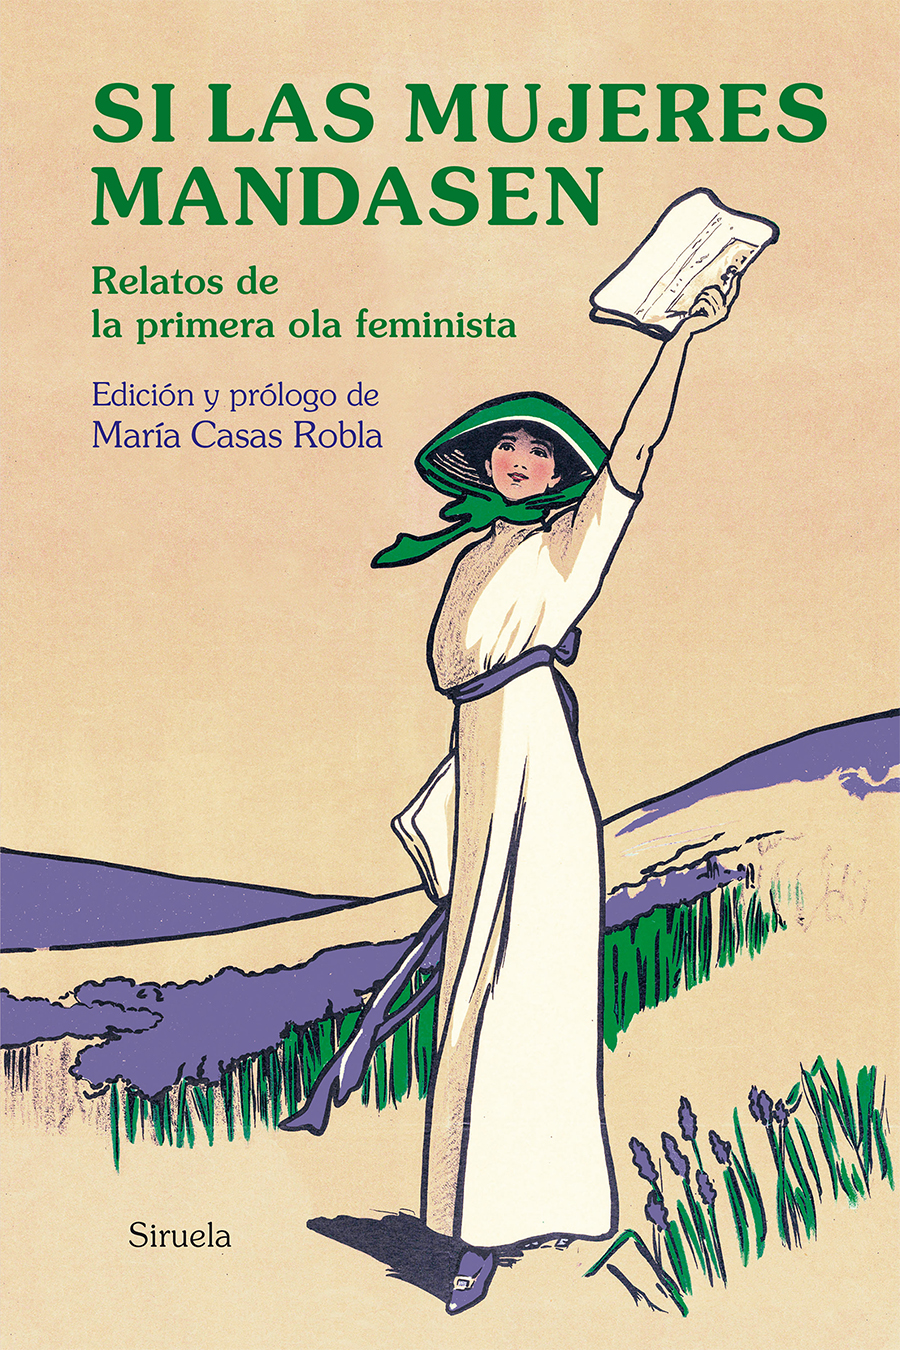 Portada: Si las mujeres mandasen. María Casas Robla (Ed.)